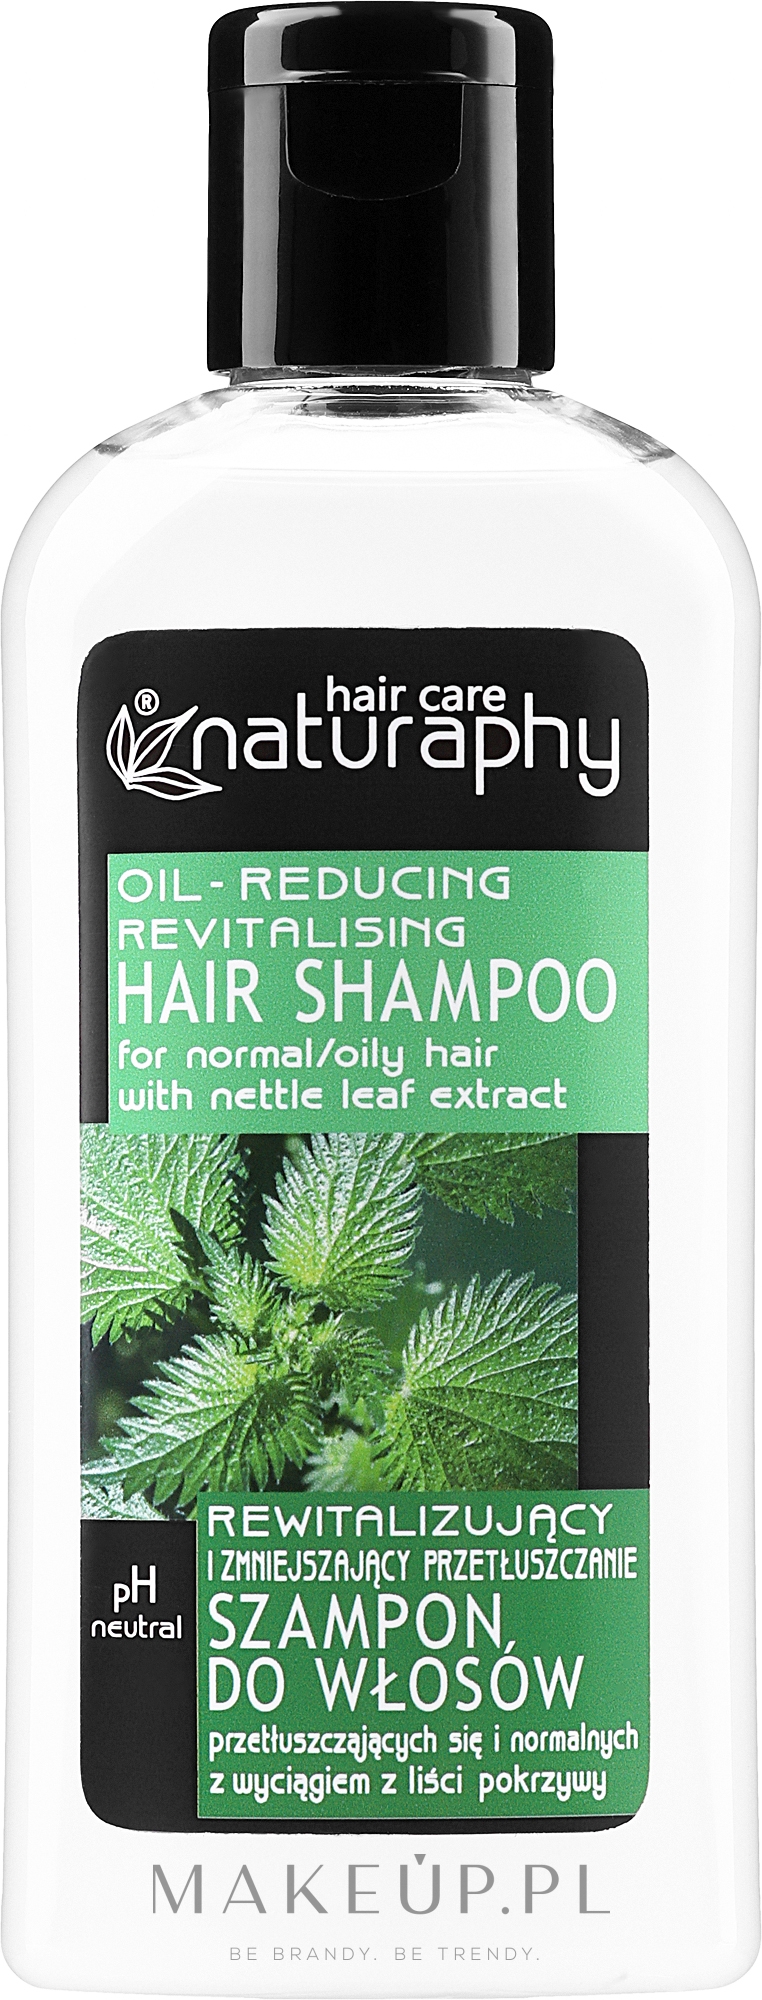 Rewitalizujący i zmniejszający przetłuszczenie szampon do włosów przetłuszczających się i normalnych z wyciągiem z liści pokrzywy - Naturaphy — Zdjęcie 100 ml